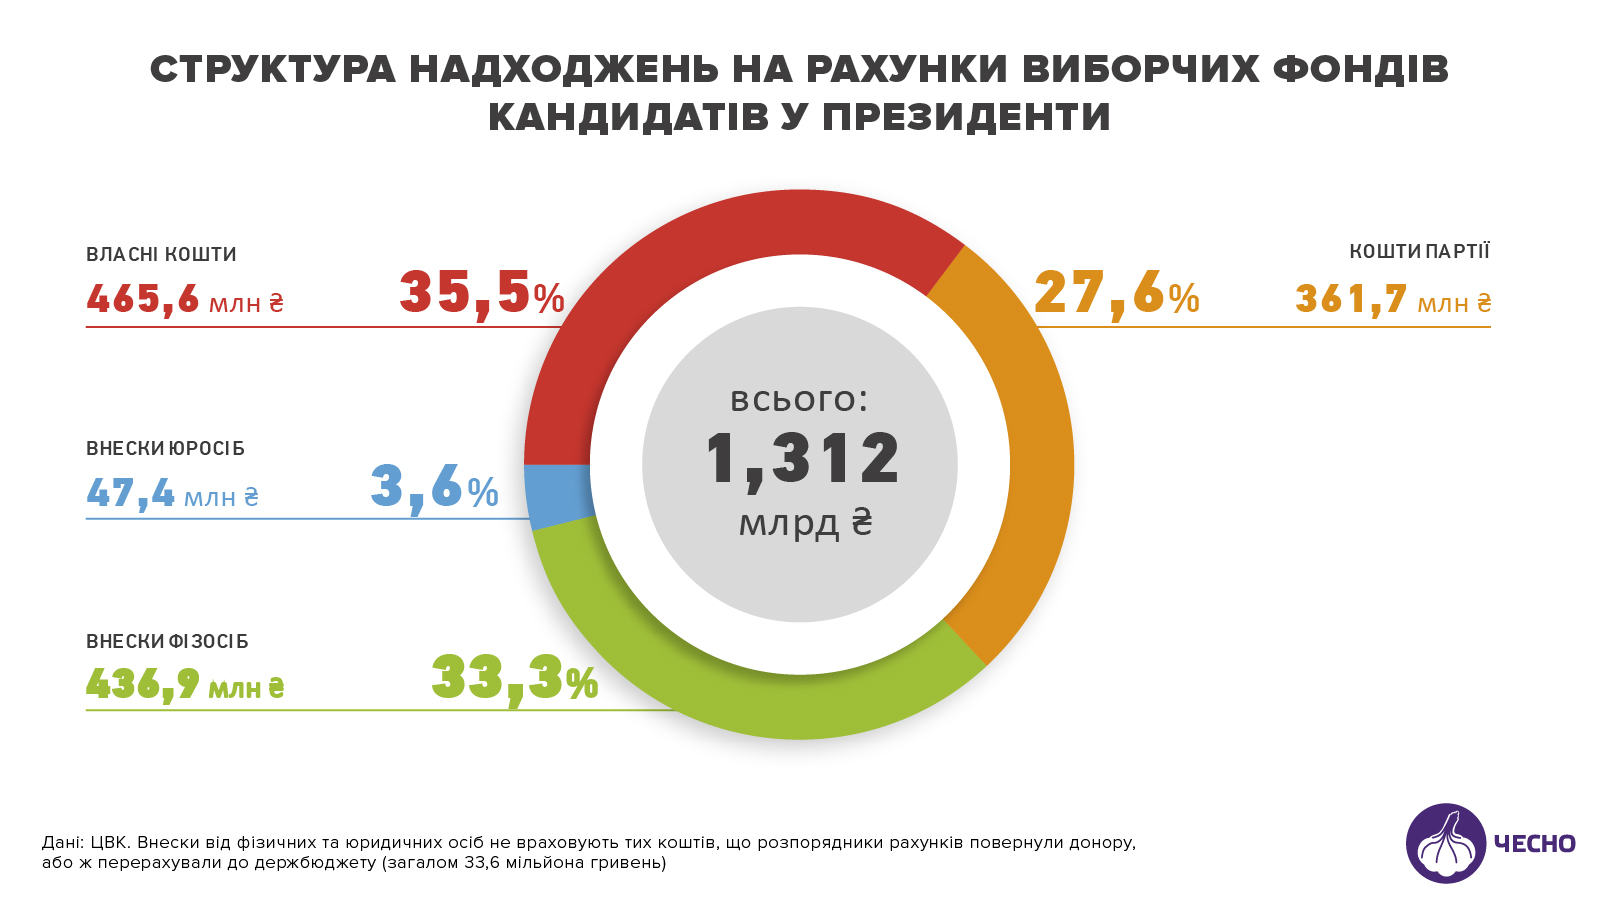 Деньги на выборы: кто пополнял фонды Порошенко, Тимошенко и Зеленского